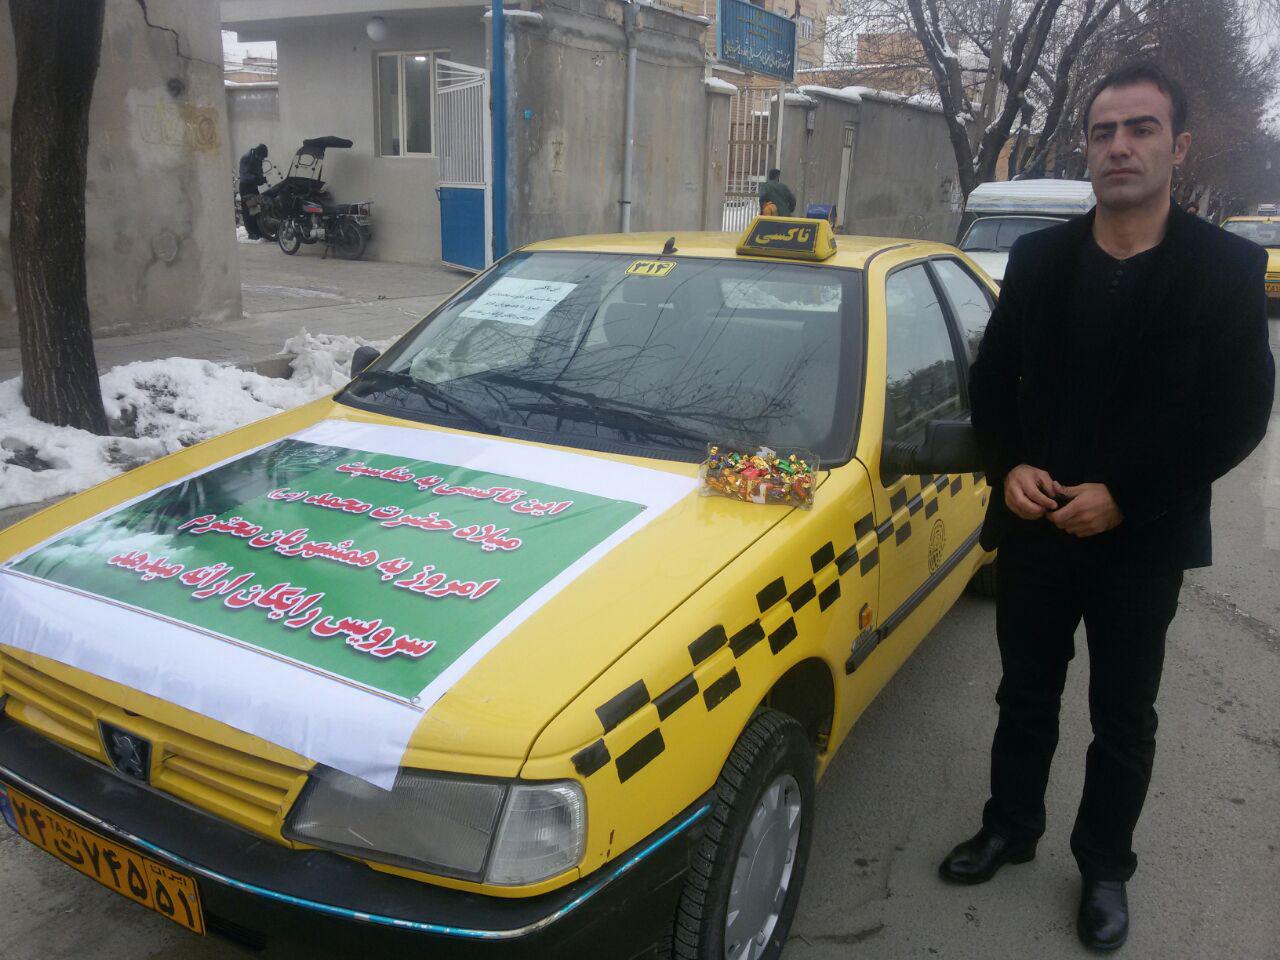 سرویس دهی رایگان راننده تاکسی سقزی به مناسبت میلاد پیامبر+ عکس